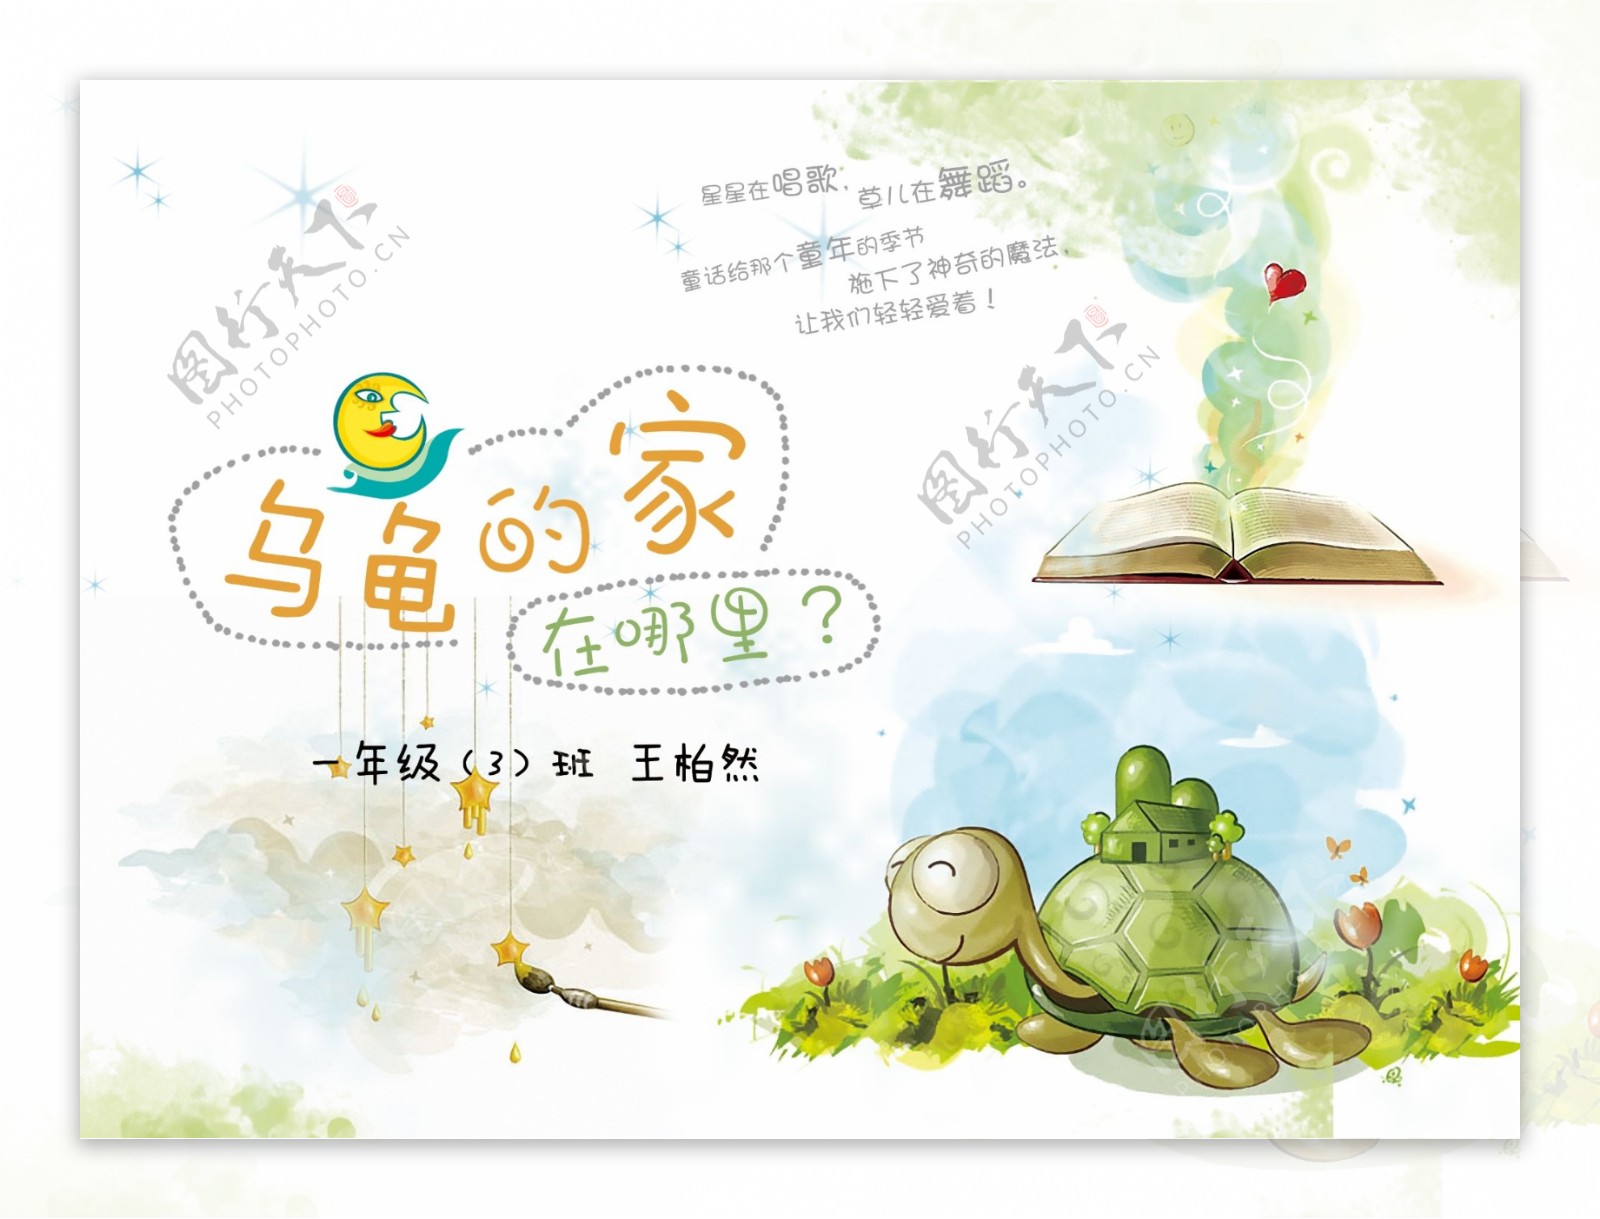 乌龟的家童话封面